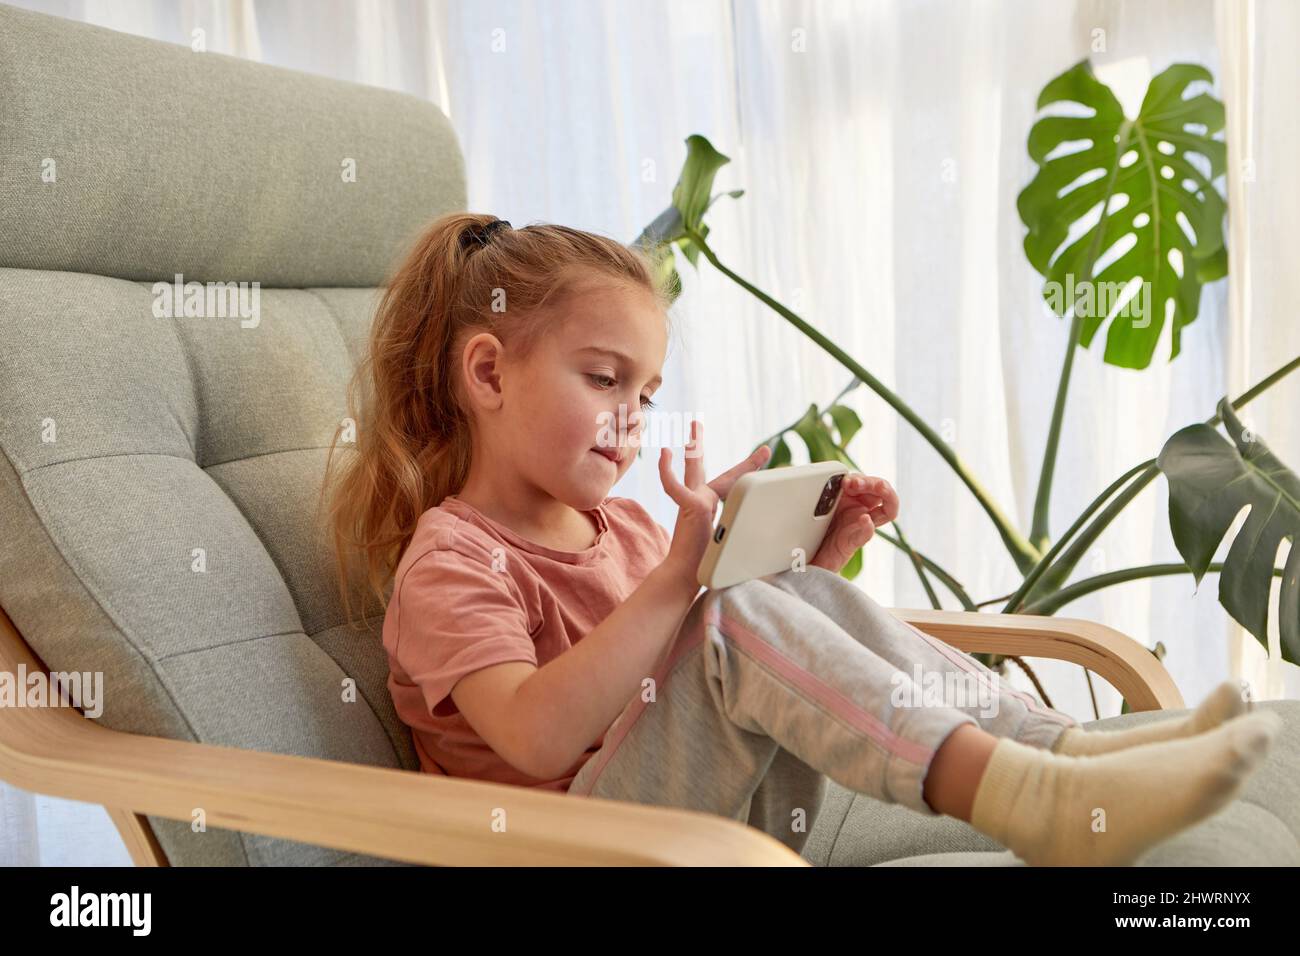 Vista lateral de linda niña pequeña con pelo largo rubio en ropa informal jugando a videojuegos en el teléfono móvil mientras se sienta en un cómodo sillón en dayli Foto de stock